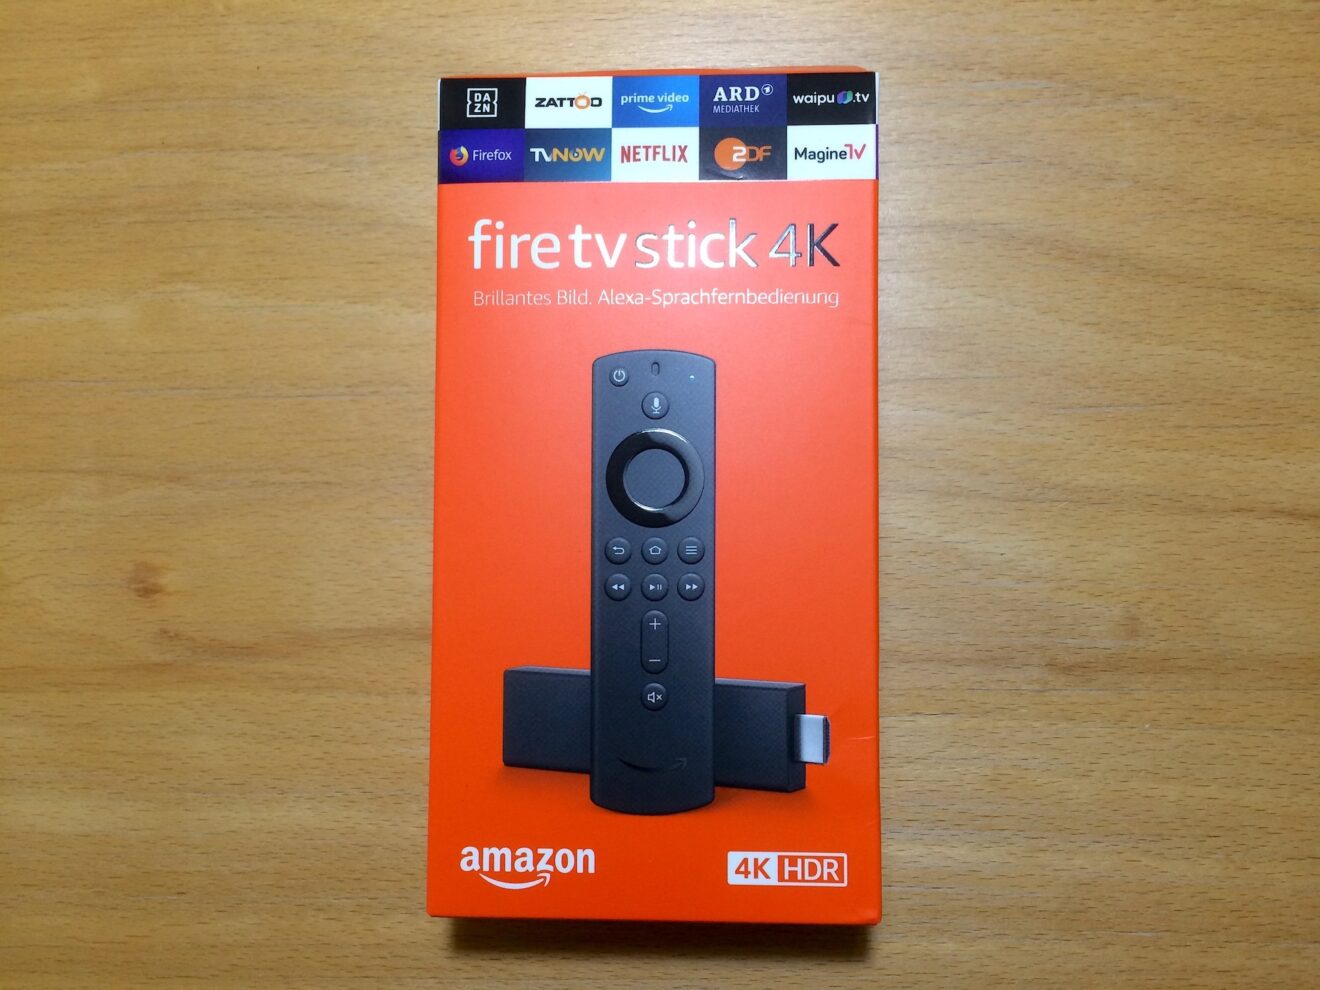 Amazon Fire TV Stick 4K ausprobiert: Gut und günstig | EURONICS Trendblog